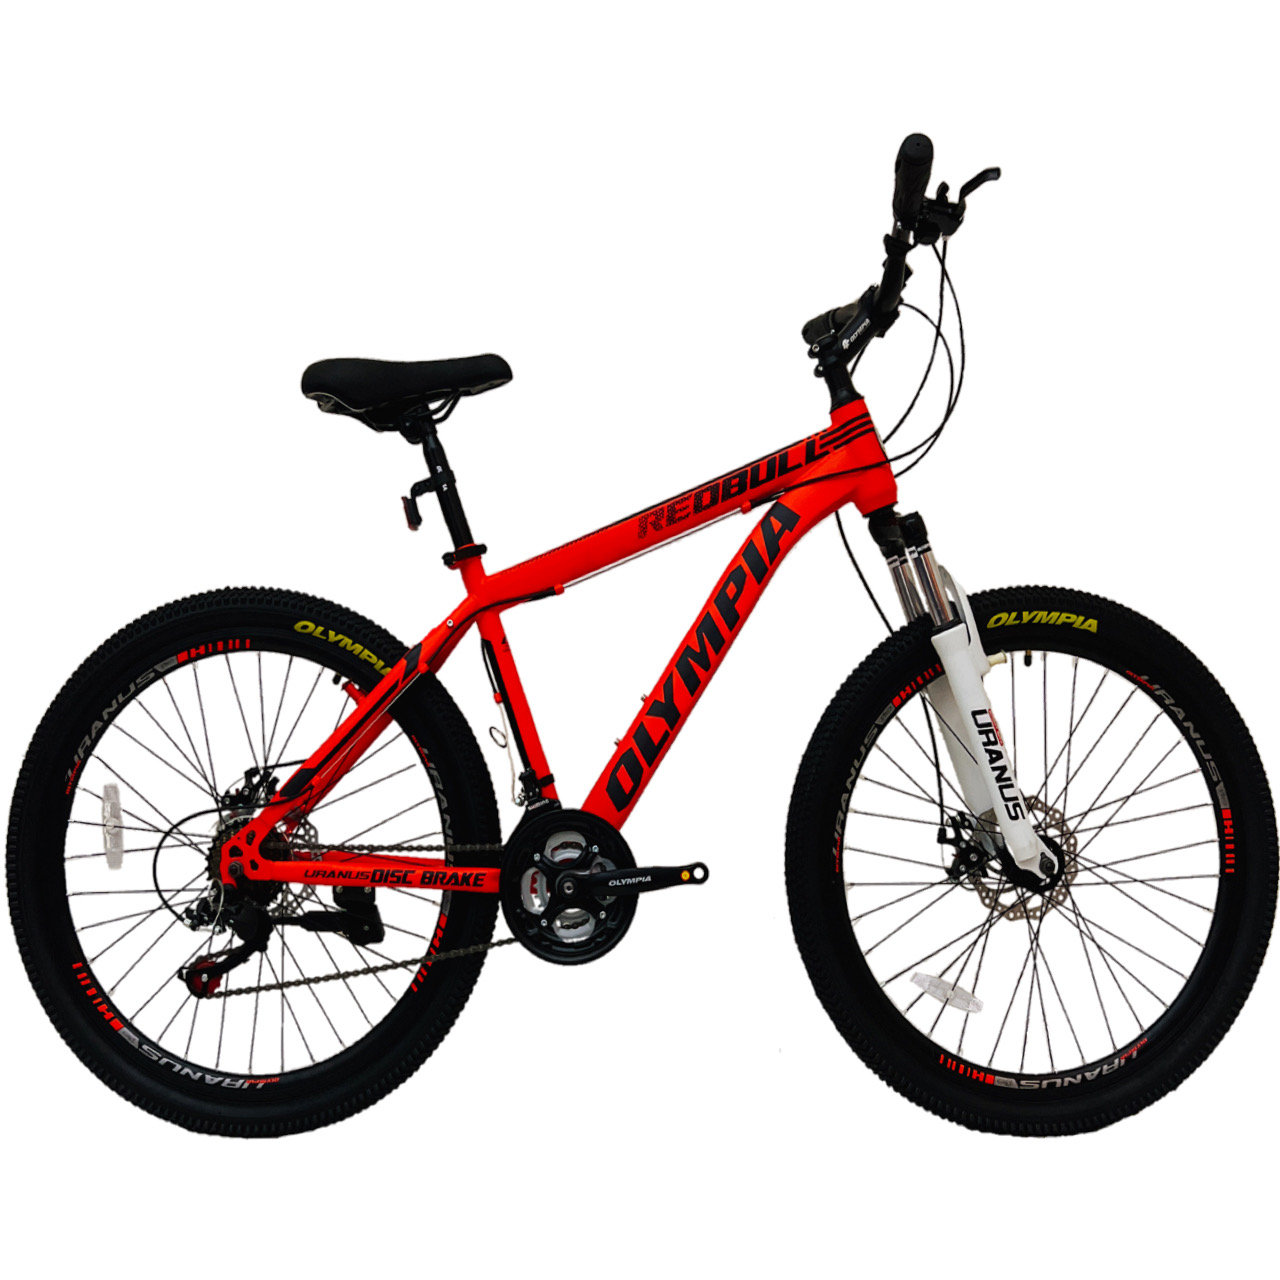 نکته خرید - قیمت روز دوچرخه کوهستان المپیا مدل REDBULL کد 02 سایز 26 خرید